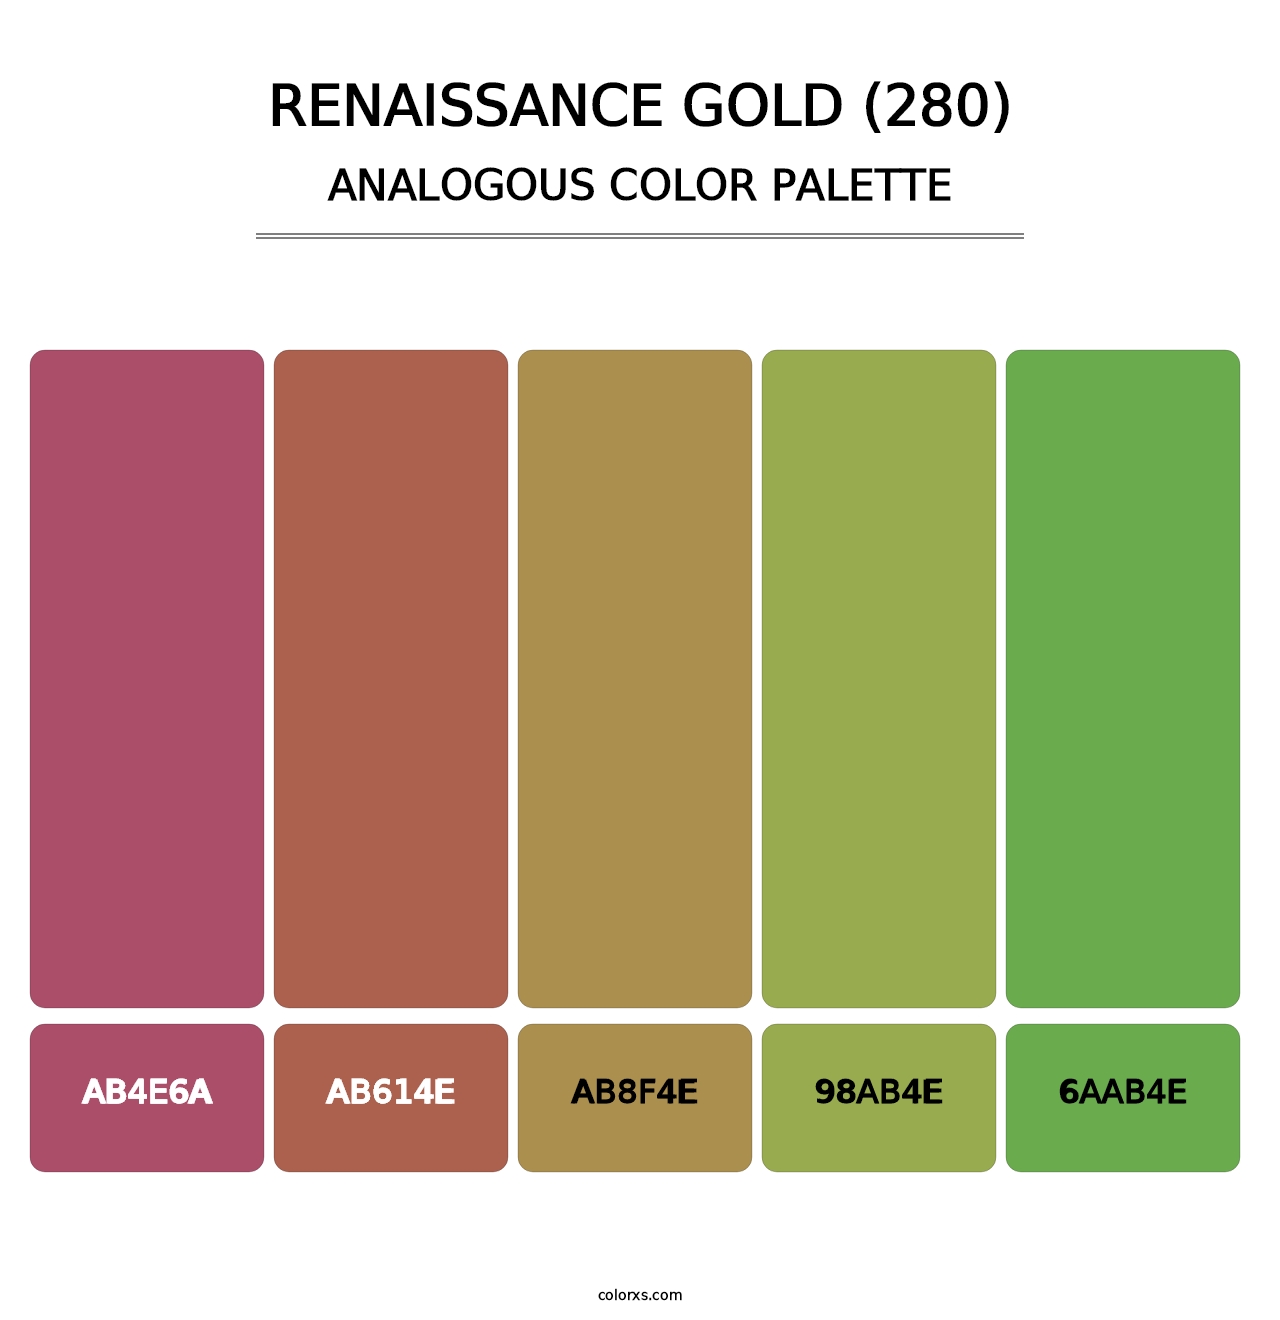 Renaissance Gold (280) - Analogous Color Palette